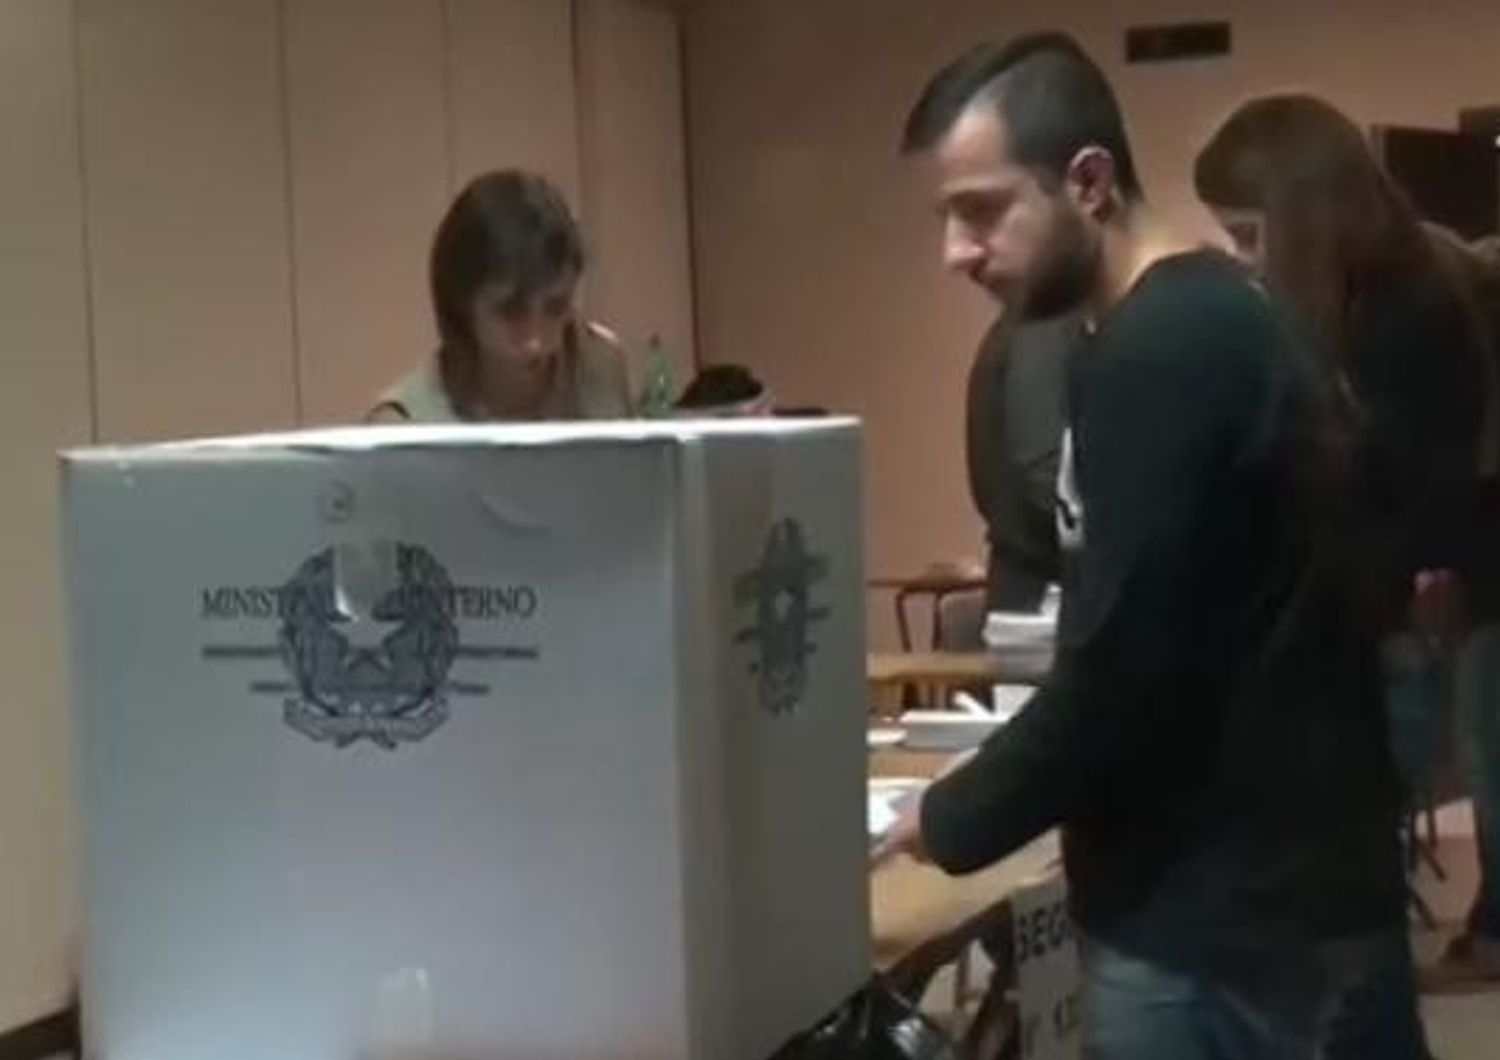 &nbsp;Referendum, le schede elettorali del voto dall'estero (Agf)